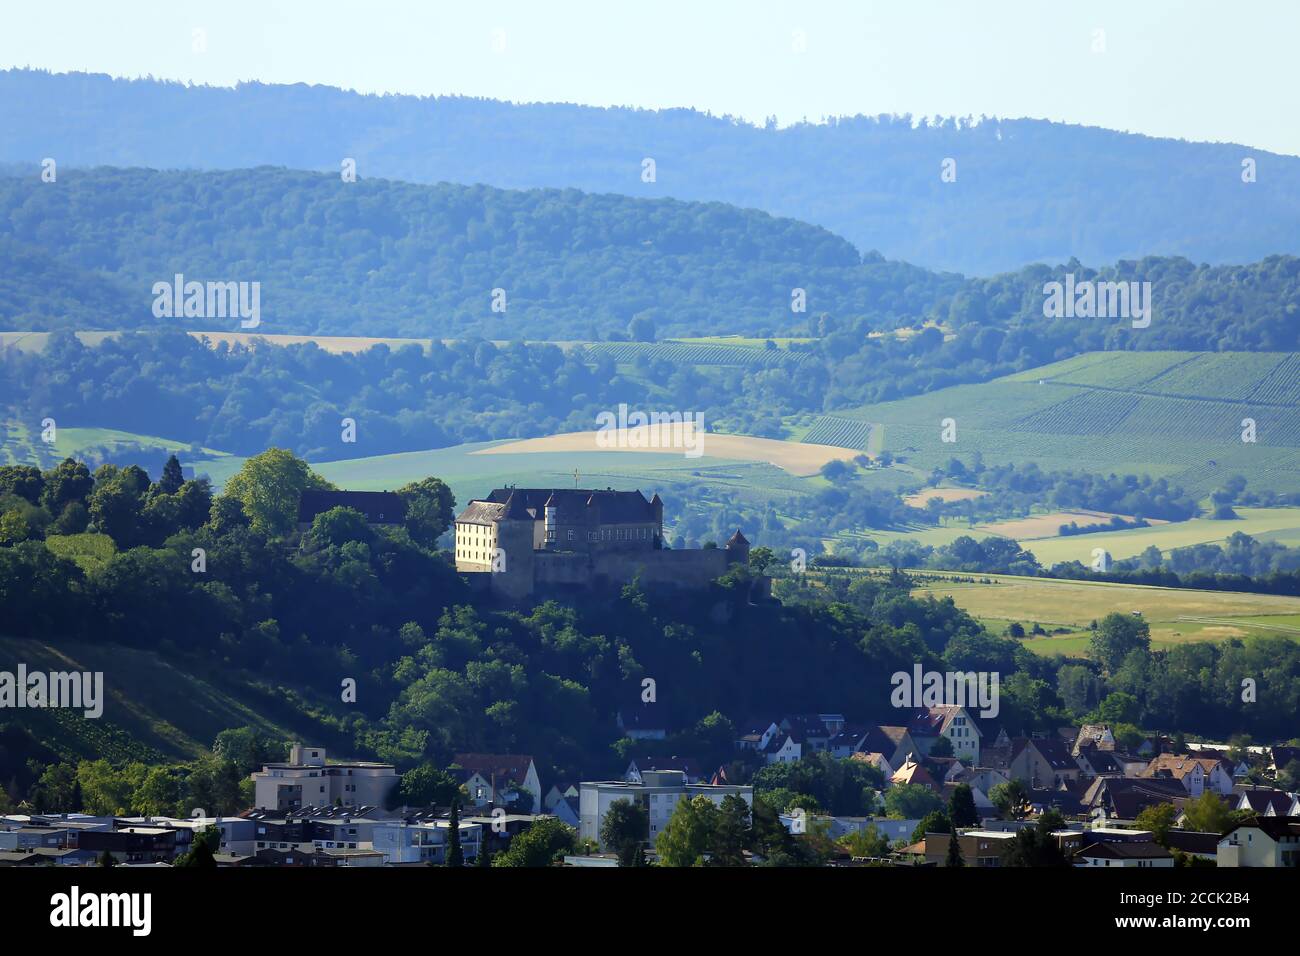 Schweinsbergturm is a sight of the city of Heilbronn Stock Photo